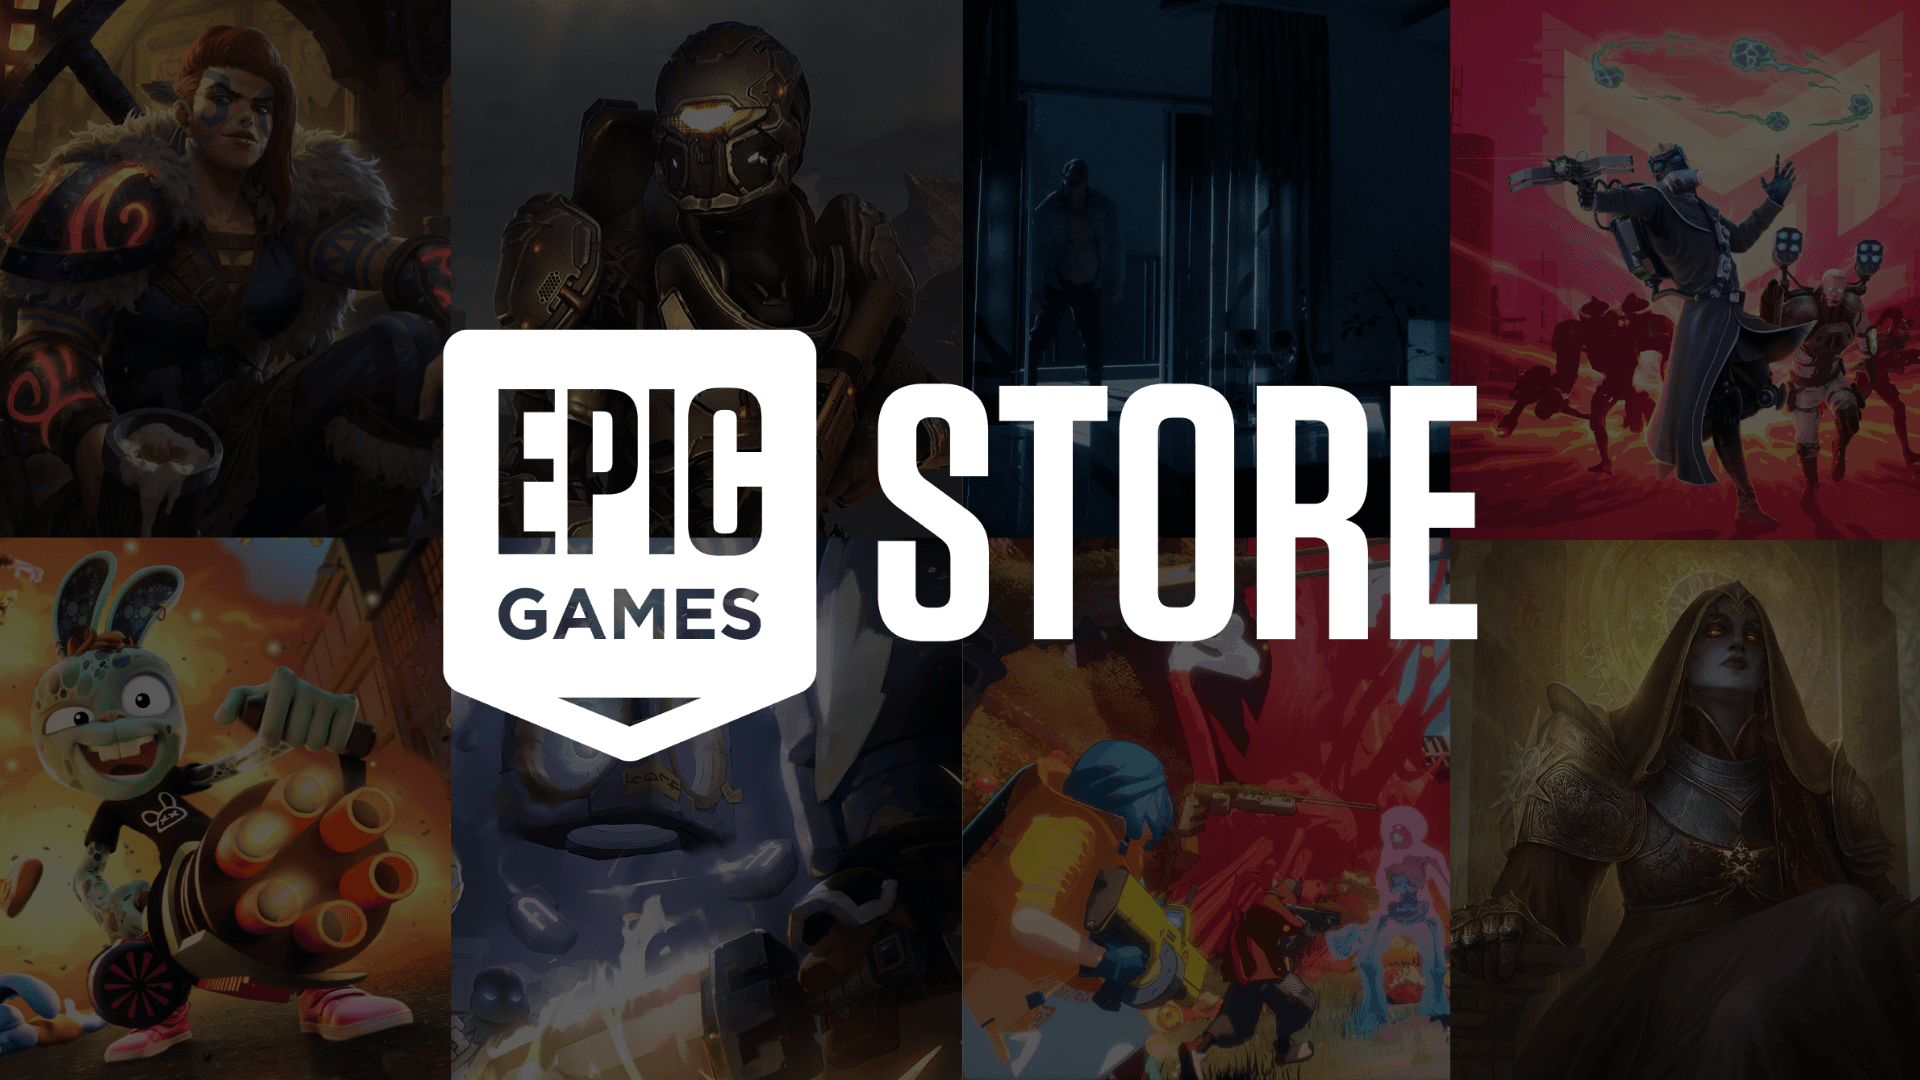 Star Atlas em breve - Epic Games Store